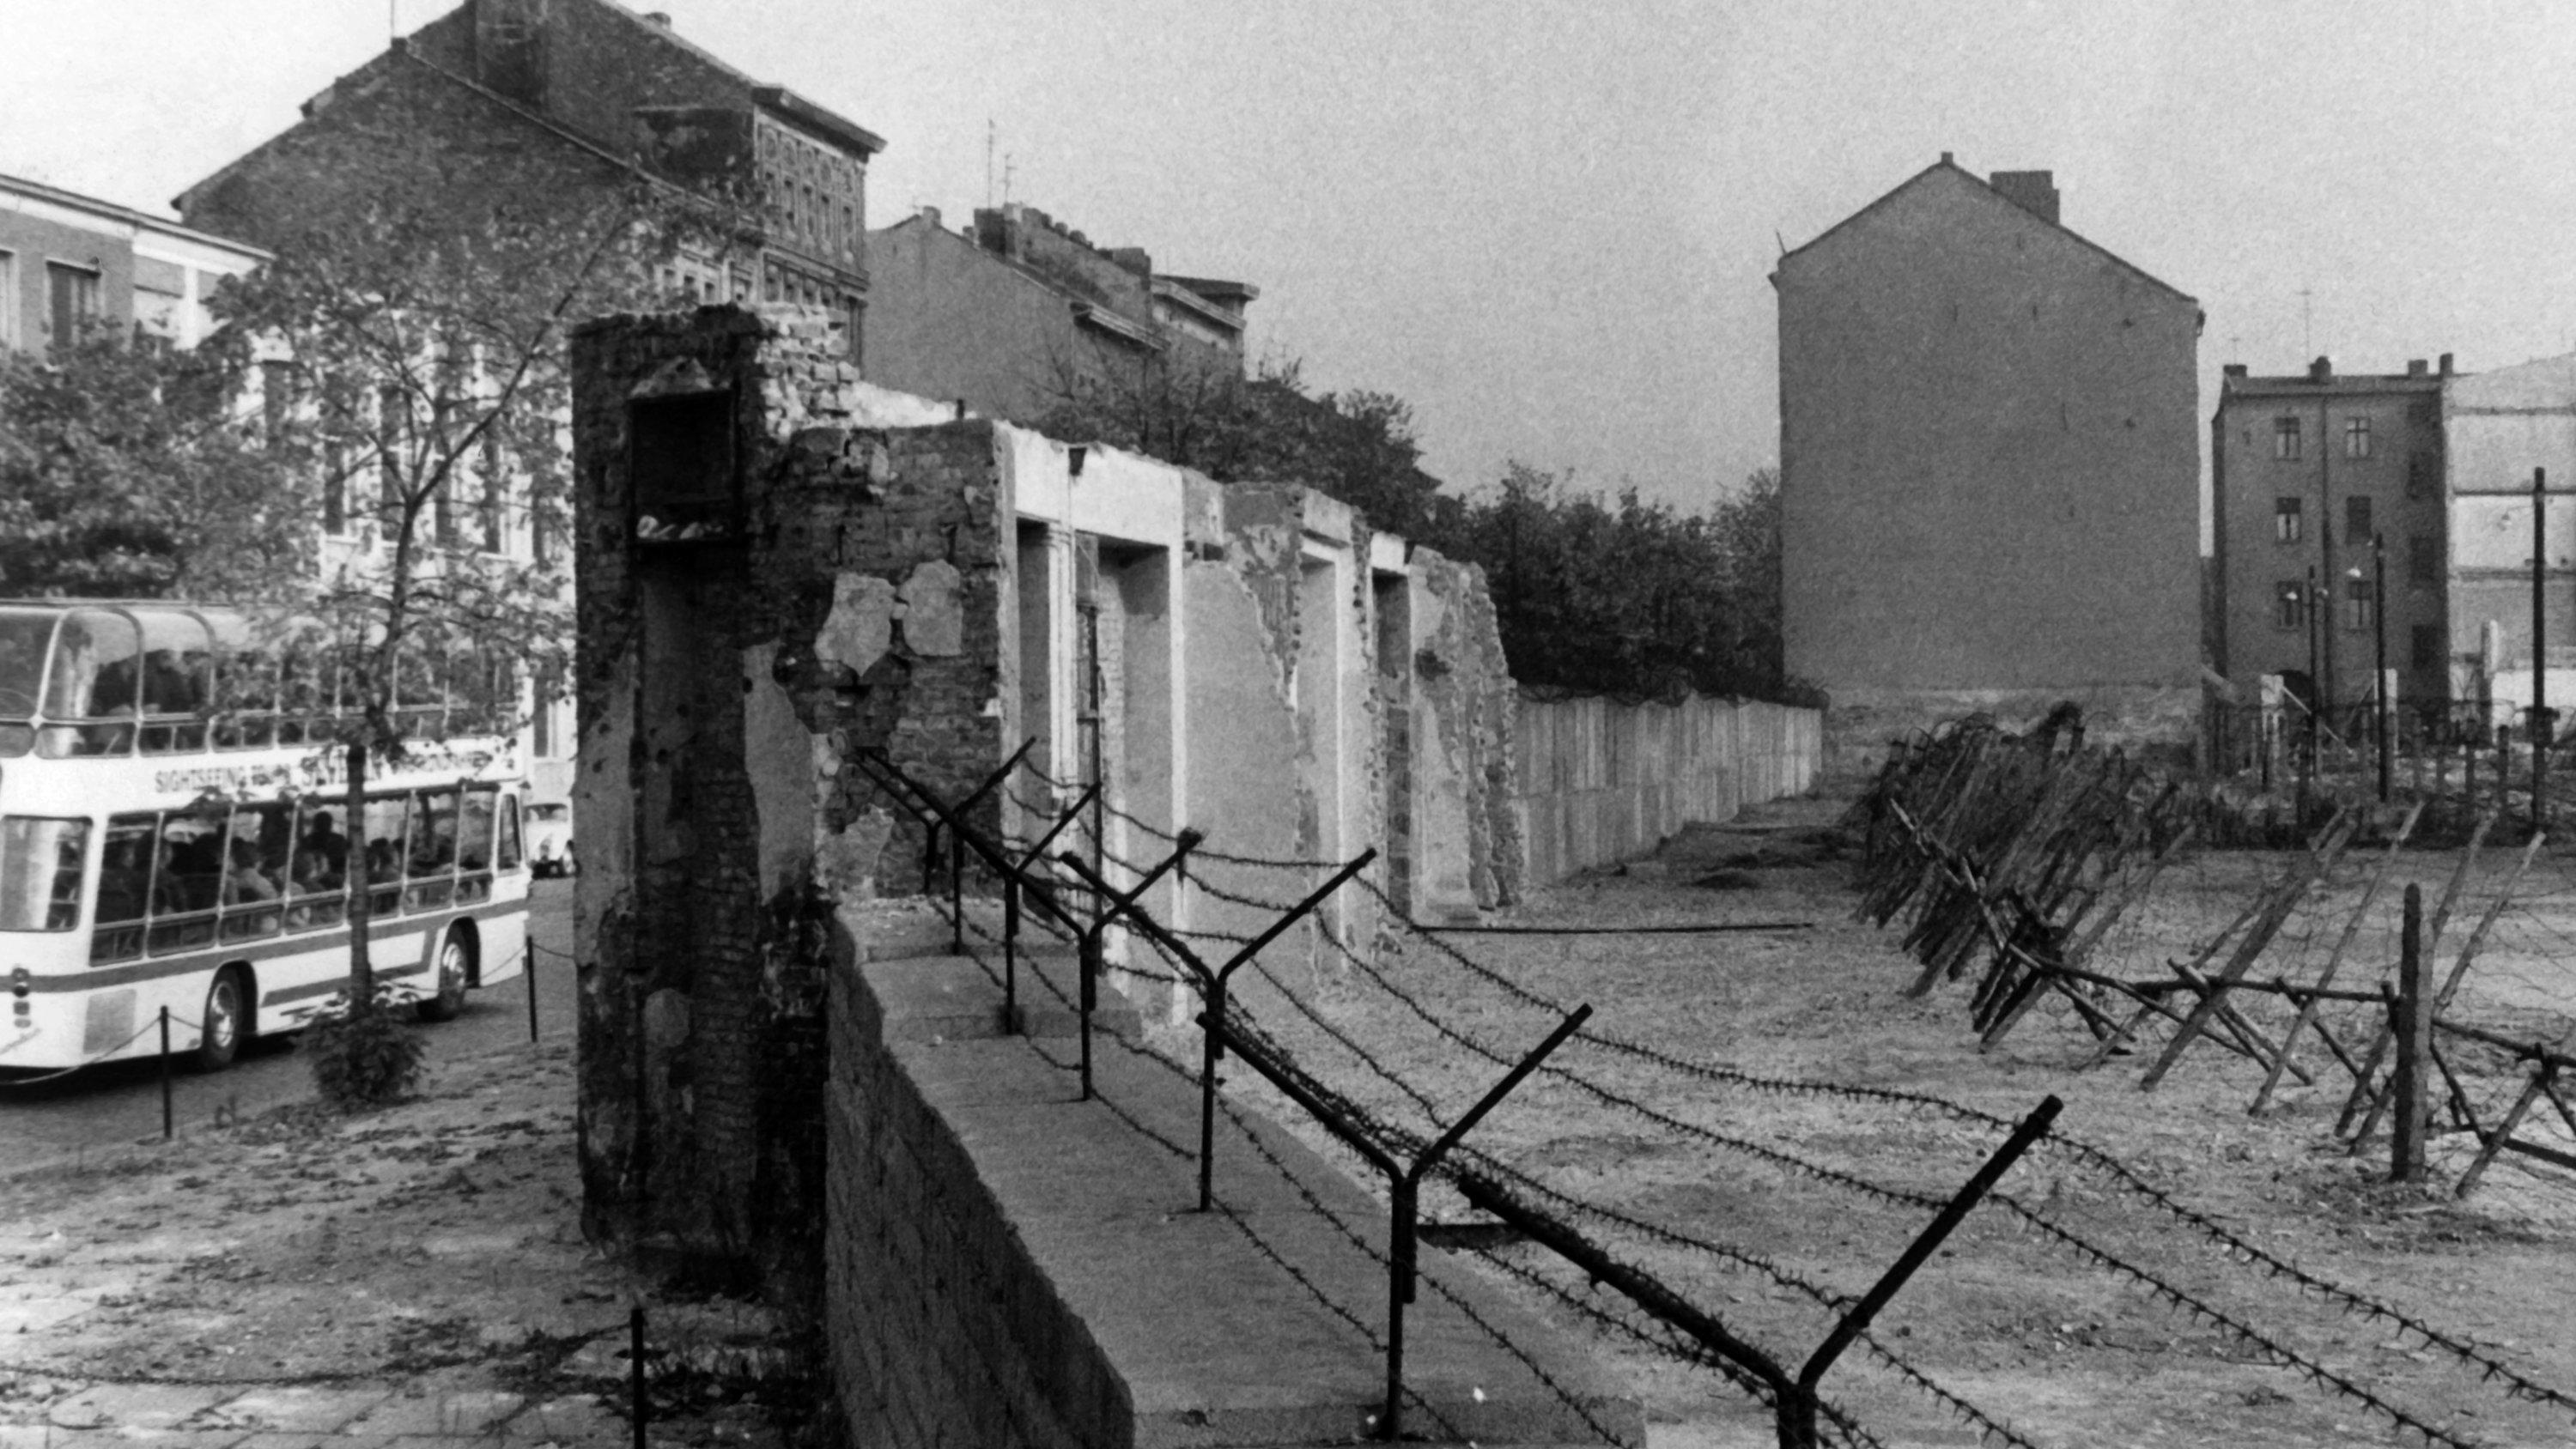 ARCHIV - Blick auf die Berliner Mauer mit Sperranlagen und Todesstreifen am 22.10.1965 in der Bernauer Straße in Berlin-Wedding. Gut zu erkennen sind auch noch die Reste der Häuser die nach und nach für den Mauerbau abgerissen wurden. Jahrestage des 